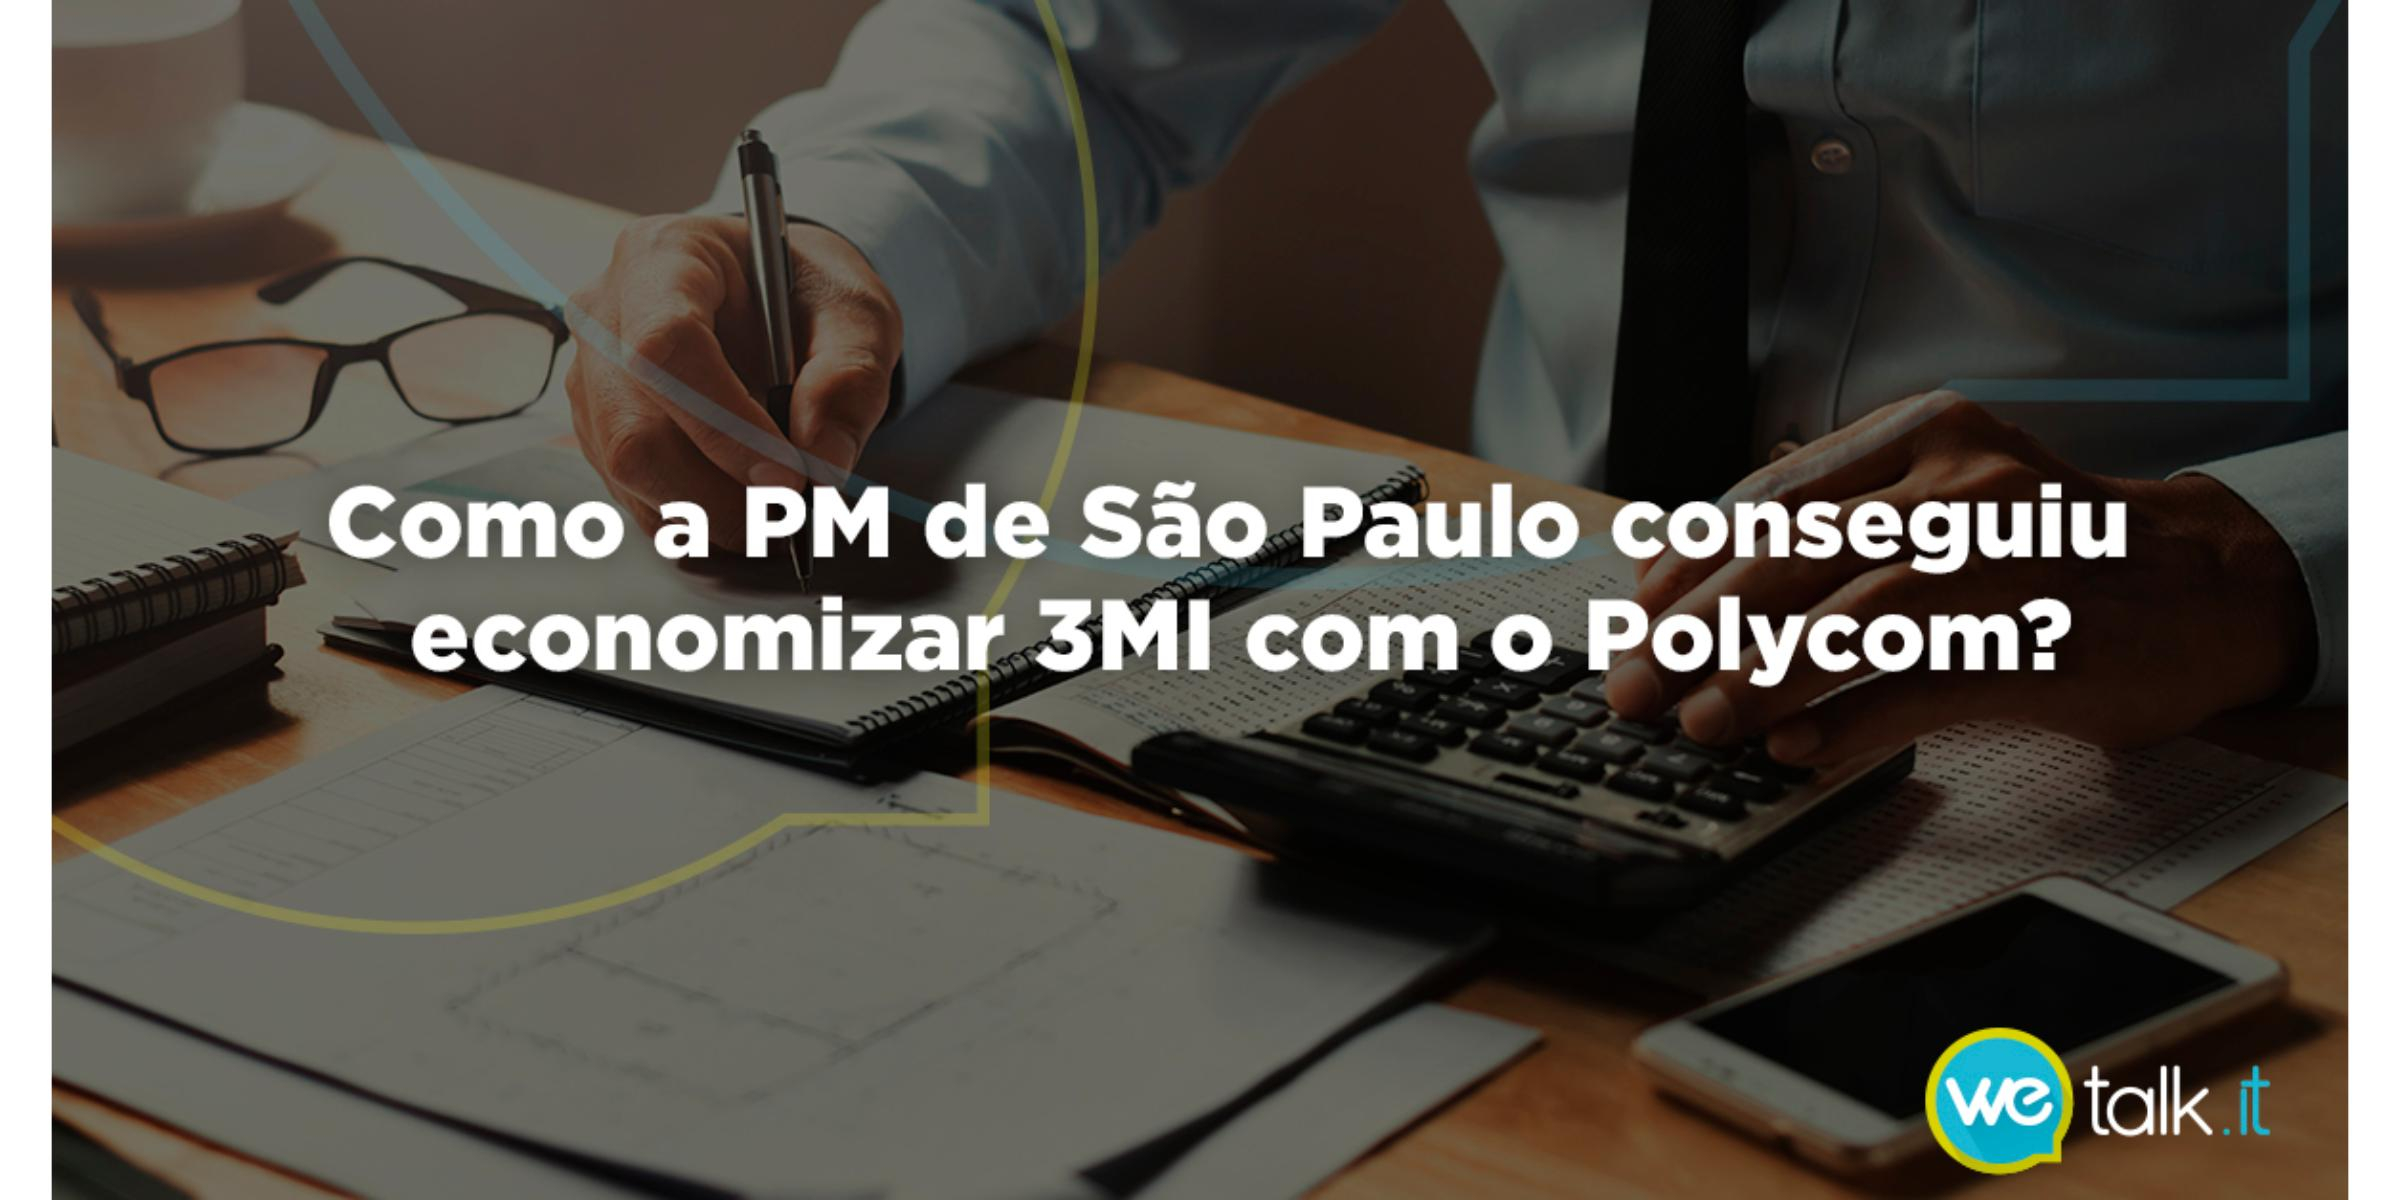 Saiba como a PM de São Paulo economizou 3M com o Polycom